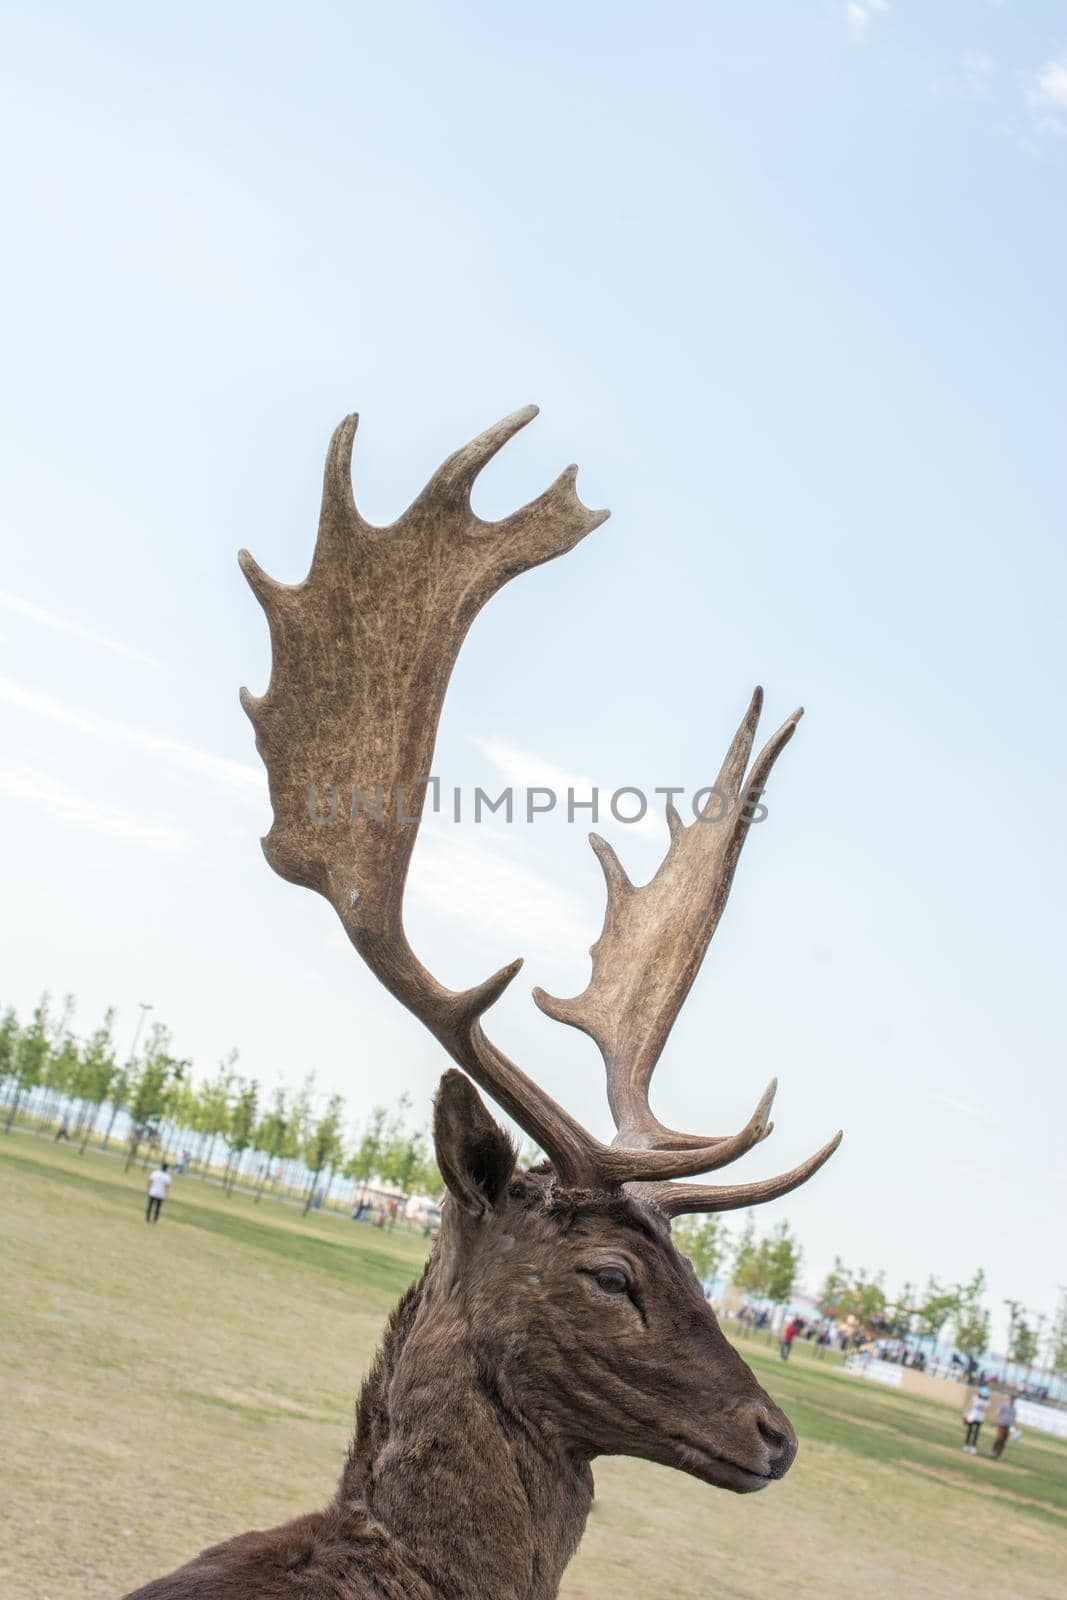 Preserved deer specimen on blue sky background on display